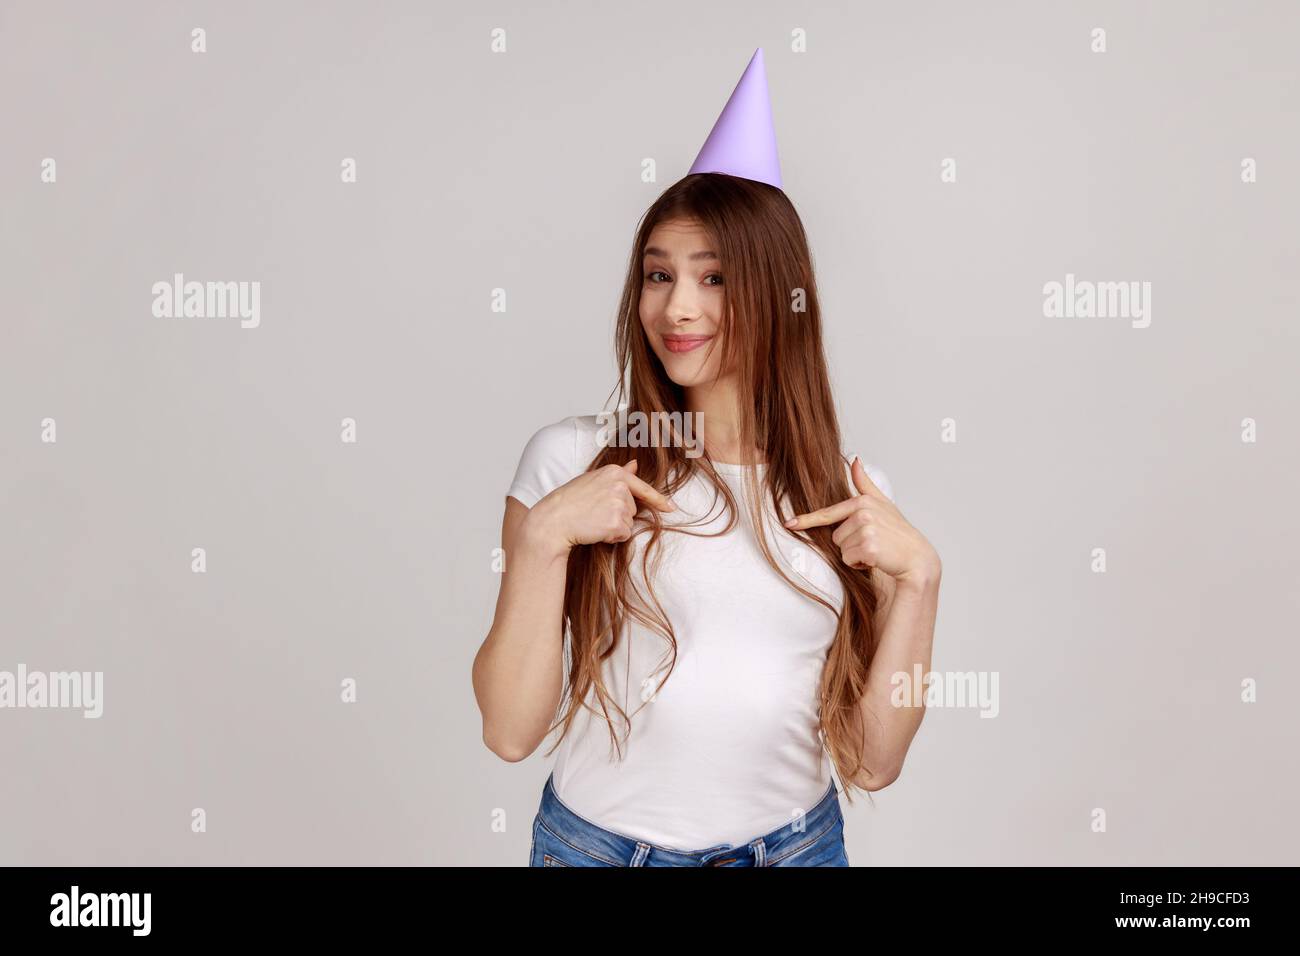 Porträt einer charmanten, fröhlichen jungen Frau in einem Partykegel auf ihrem Kopf, auf sich selbst zeigend, Geburtstag feiert und weißes T-Shirt trägt. Innenaufnahme des Studios isoliert auf grauem Hintergrund. Stockfoto